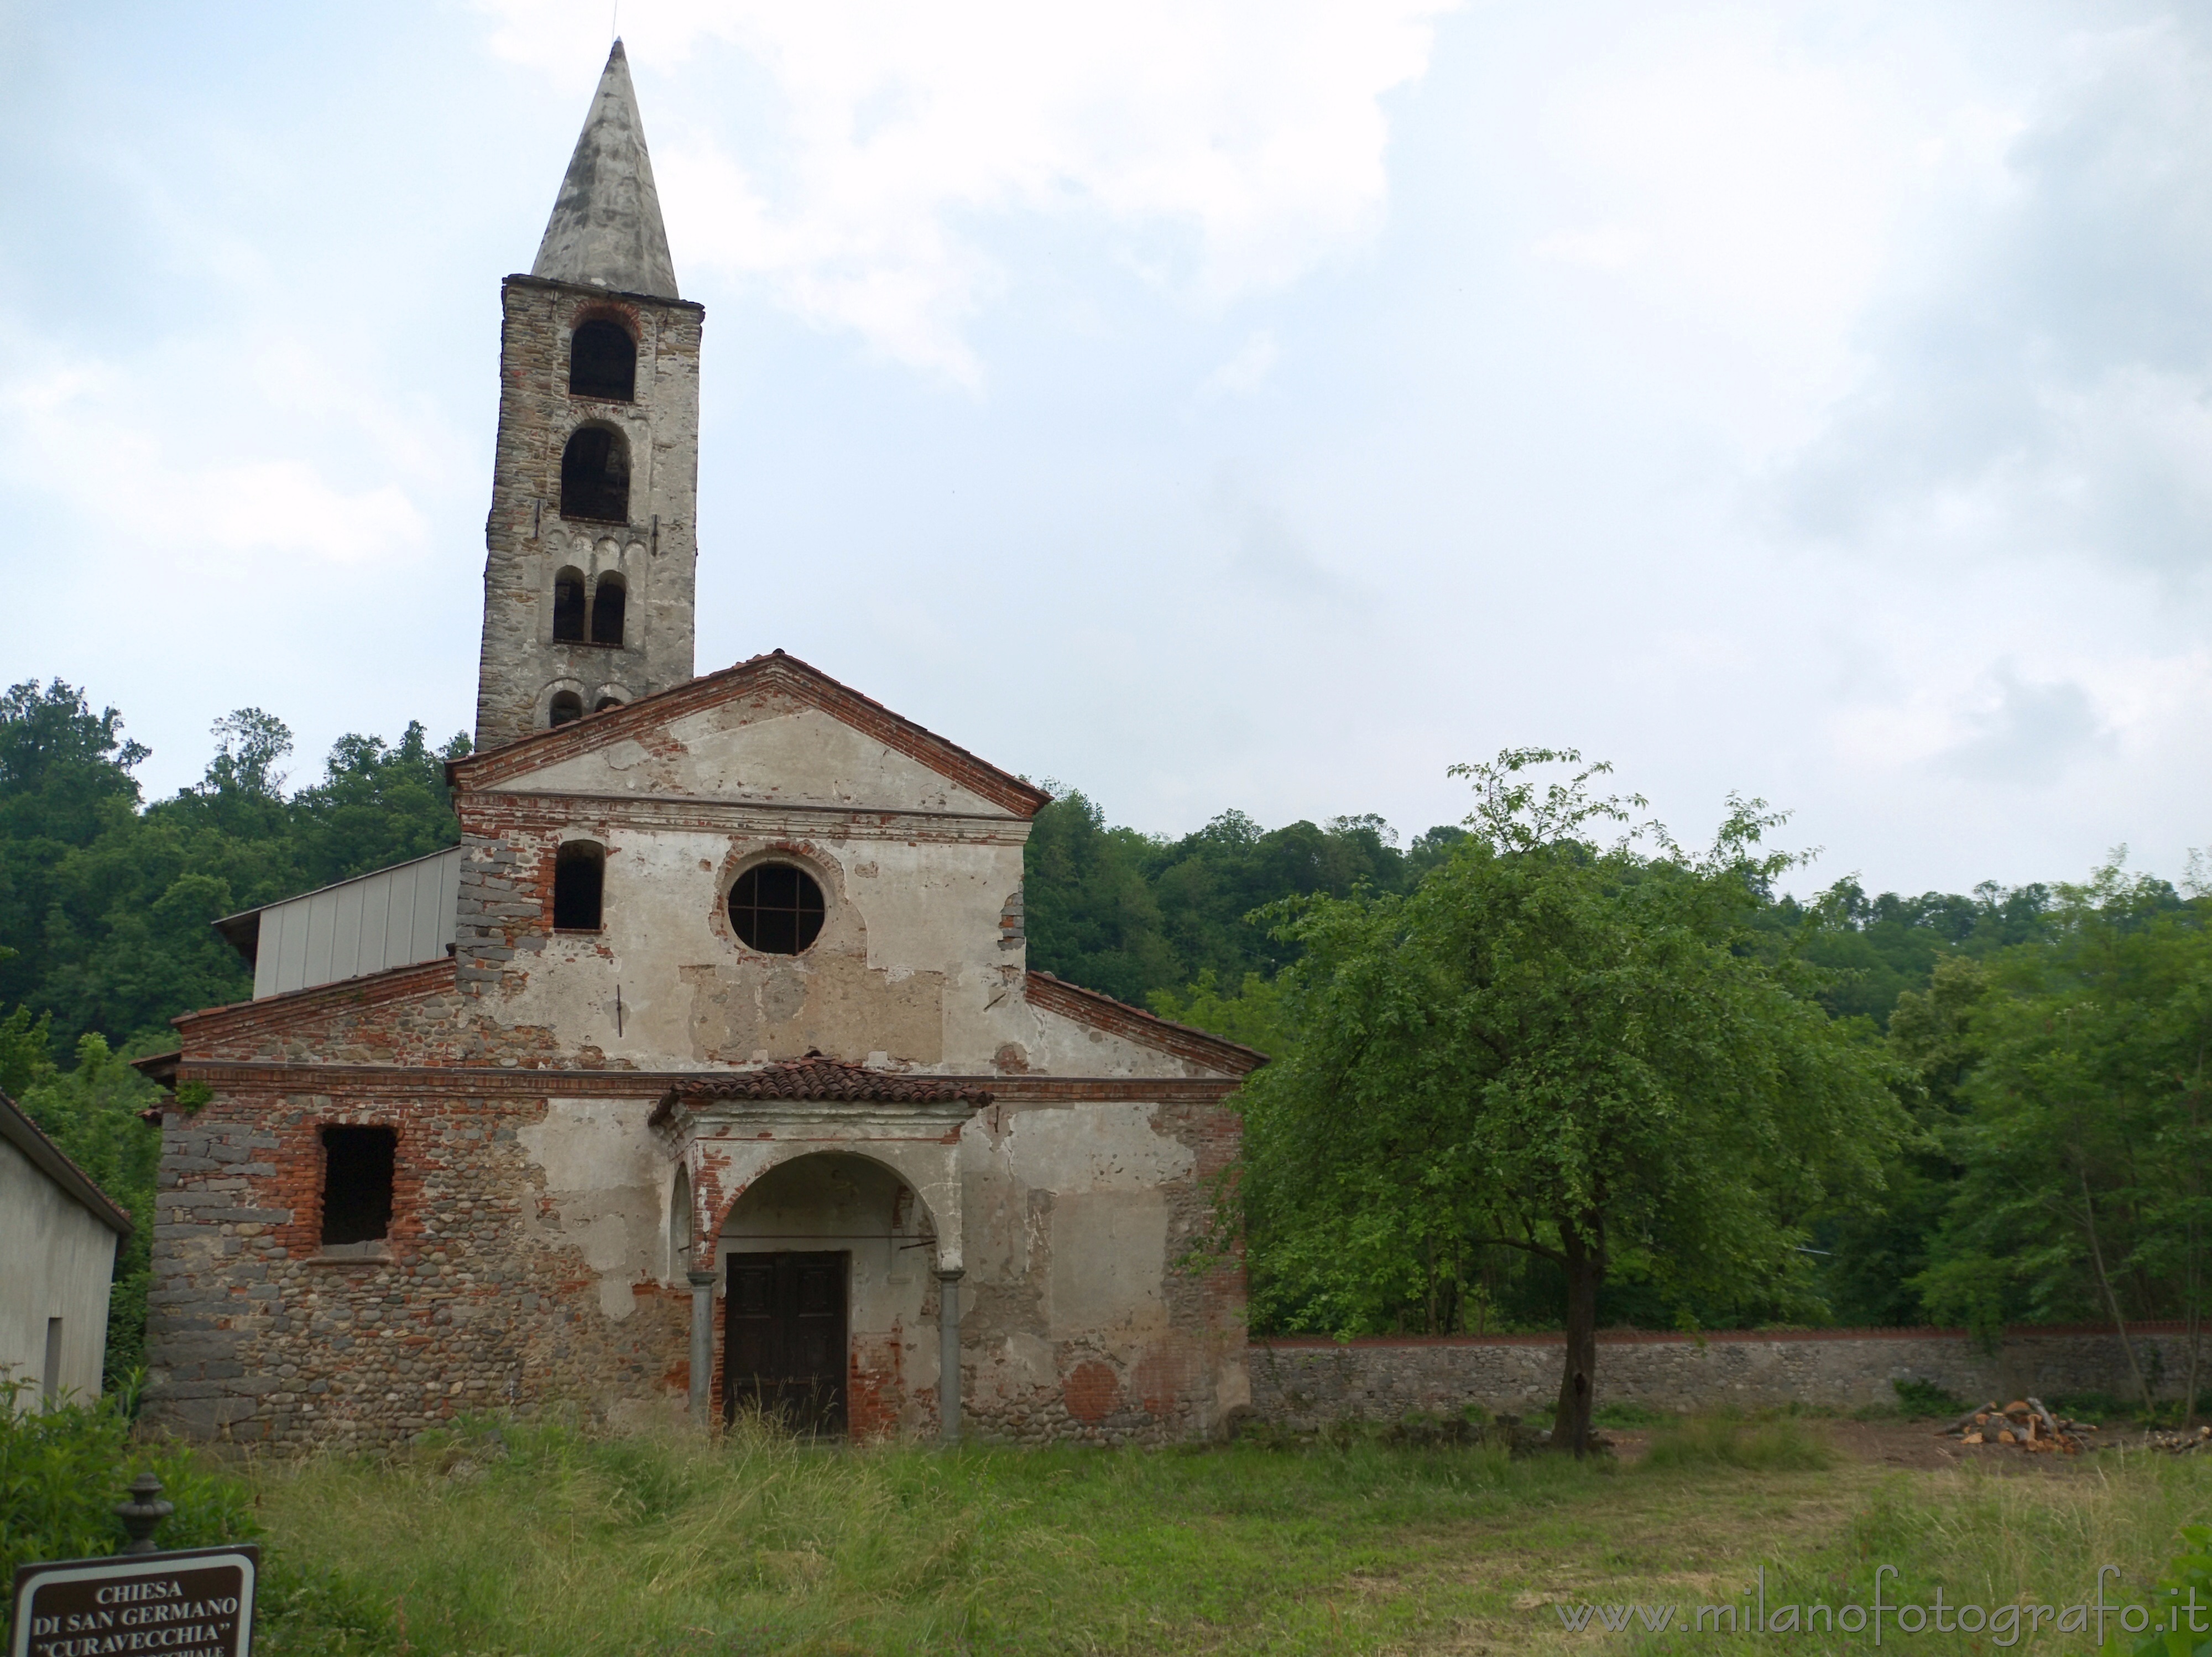 Tollegno (Biella, Italy): Curavecchia Church, the Old Church of San Germano - Tollegno (Biella, Italy)